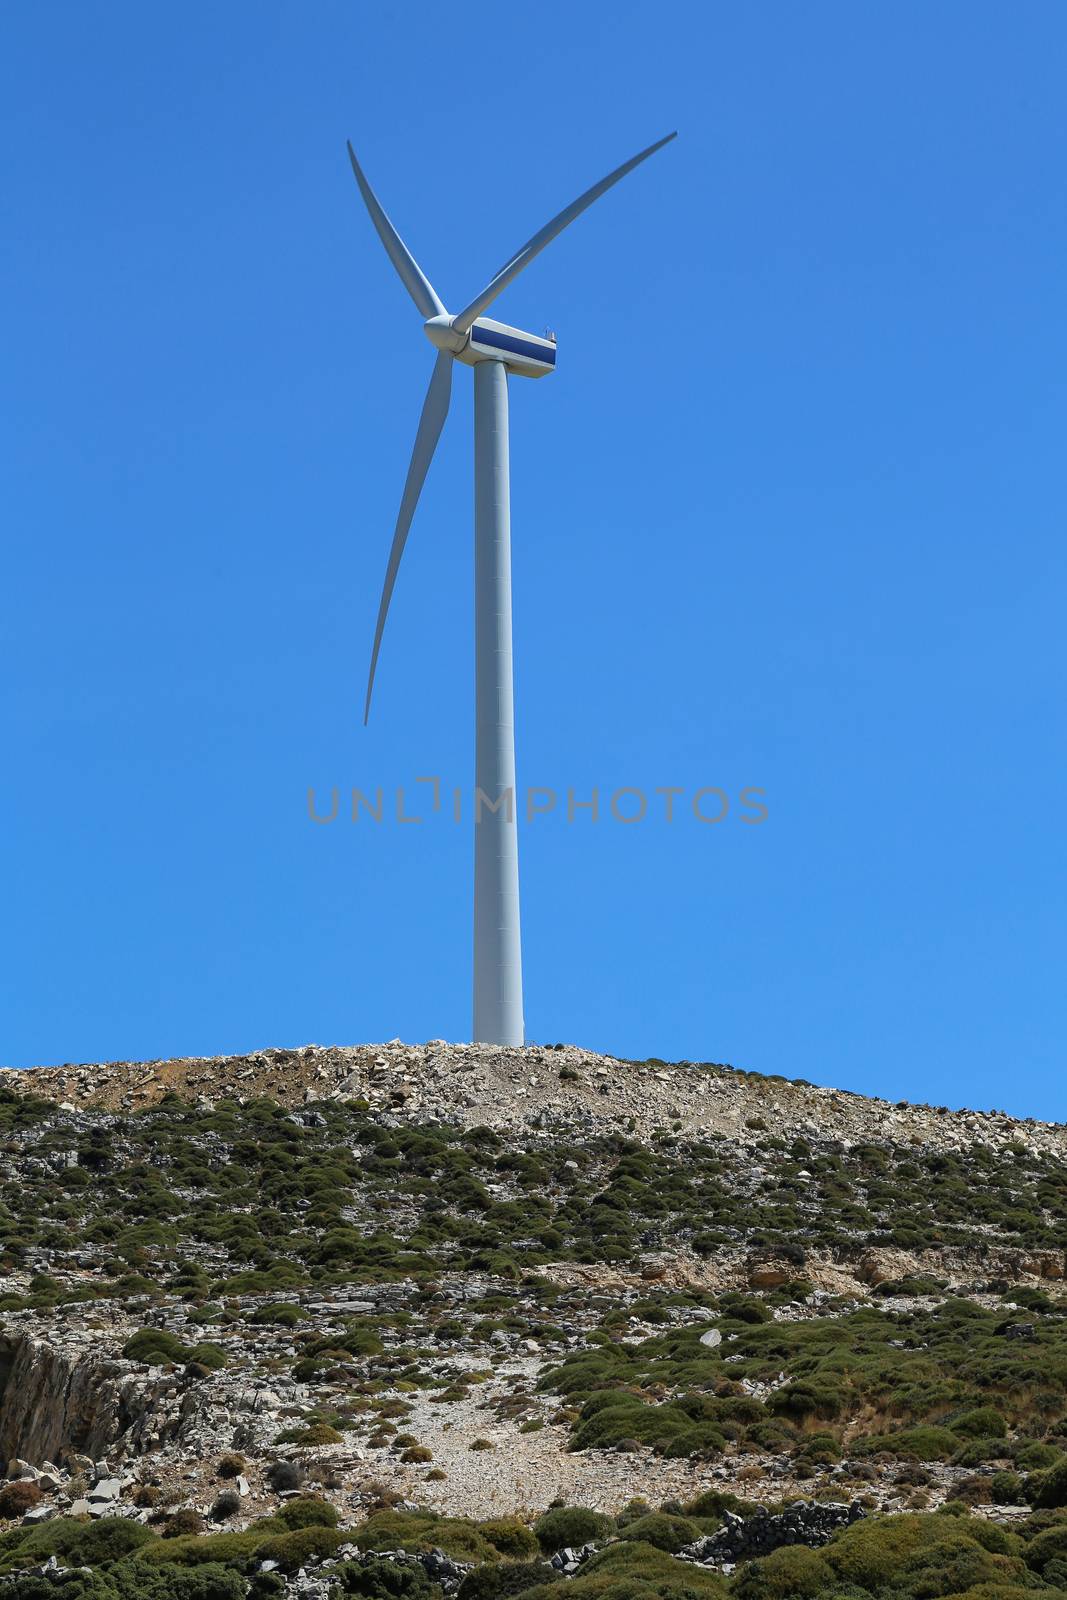 A new power wind mill farm in Greece